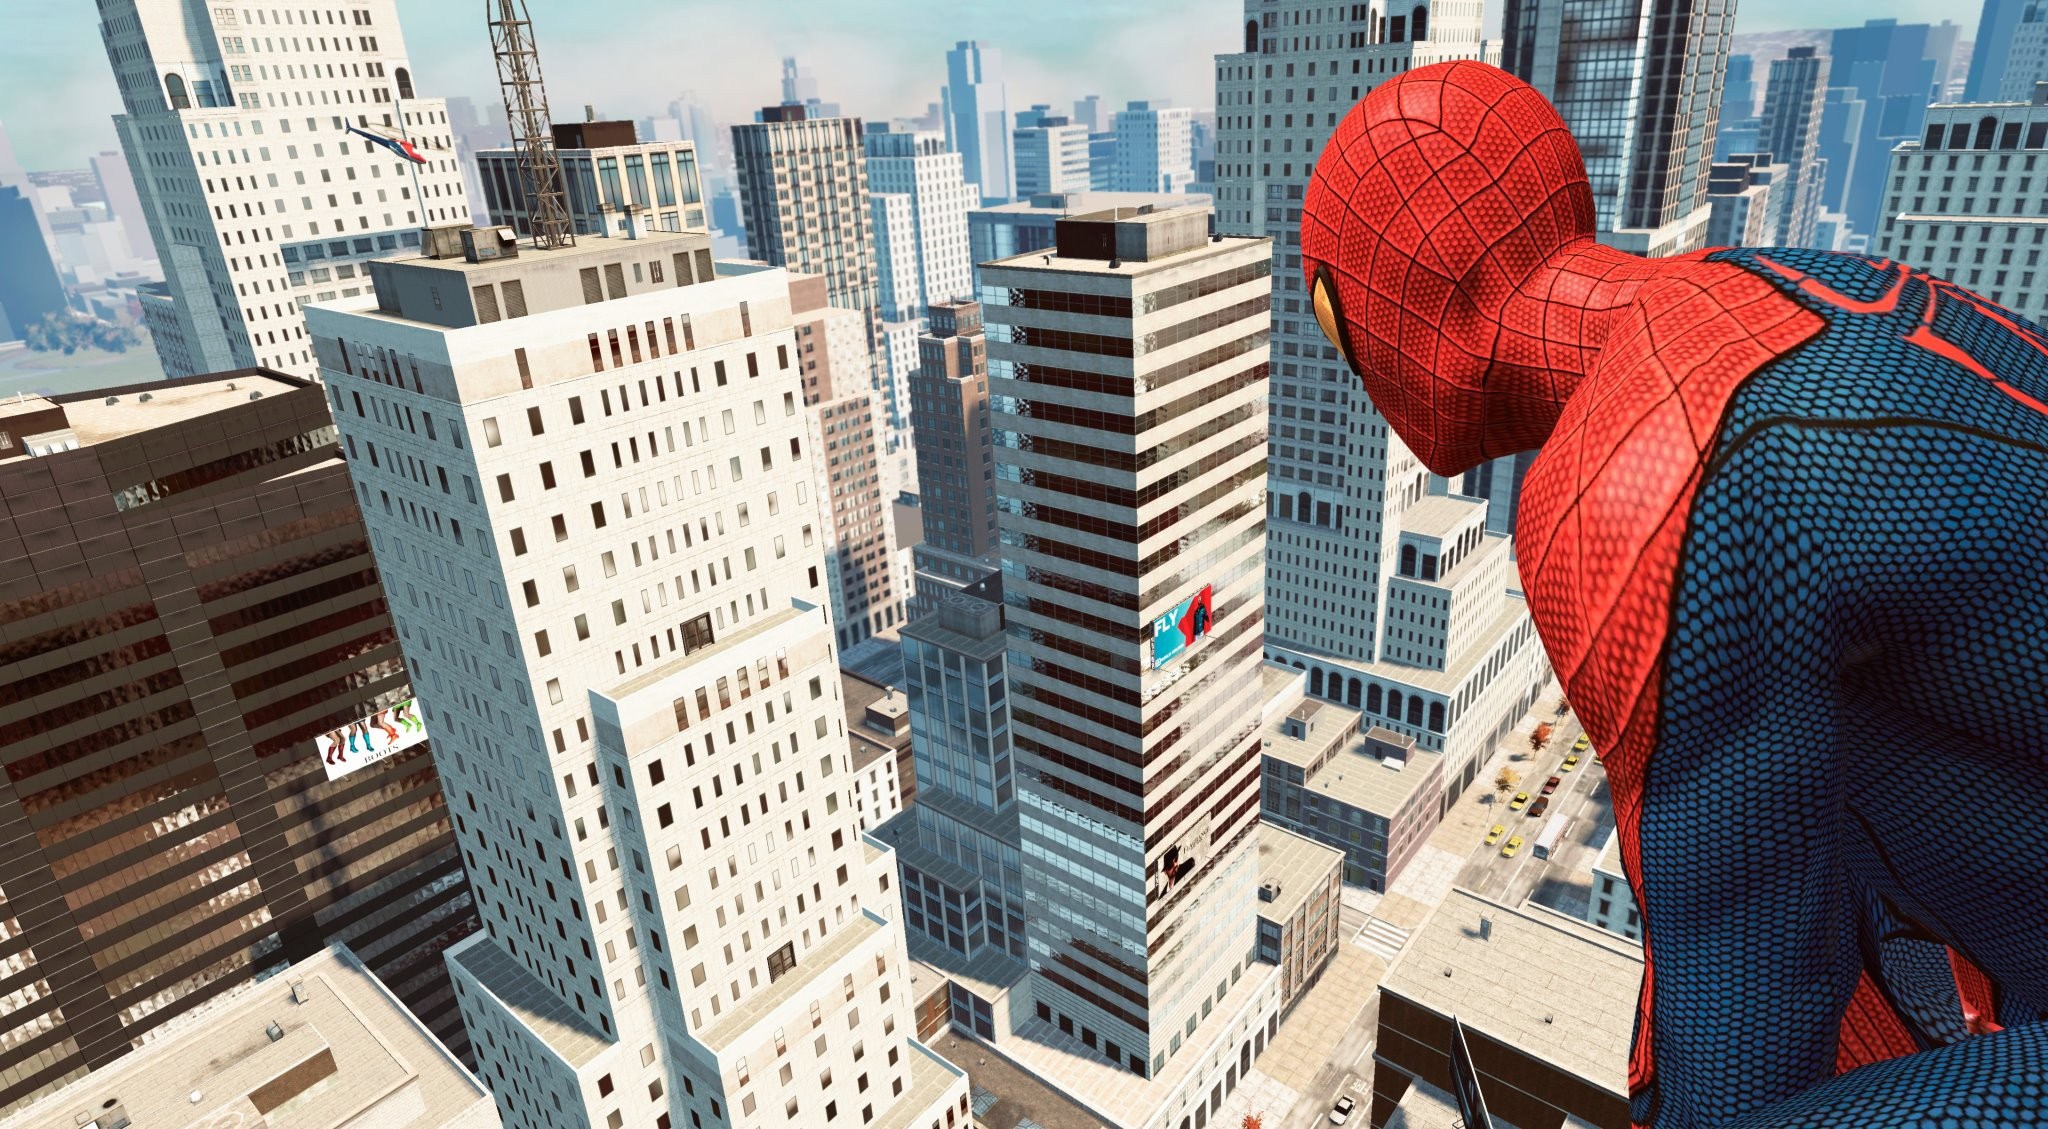 The amazing Spider-man (игра, 2012)